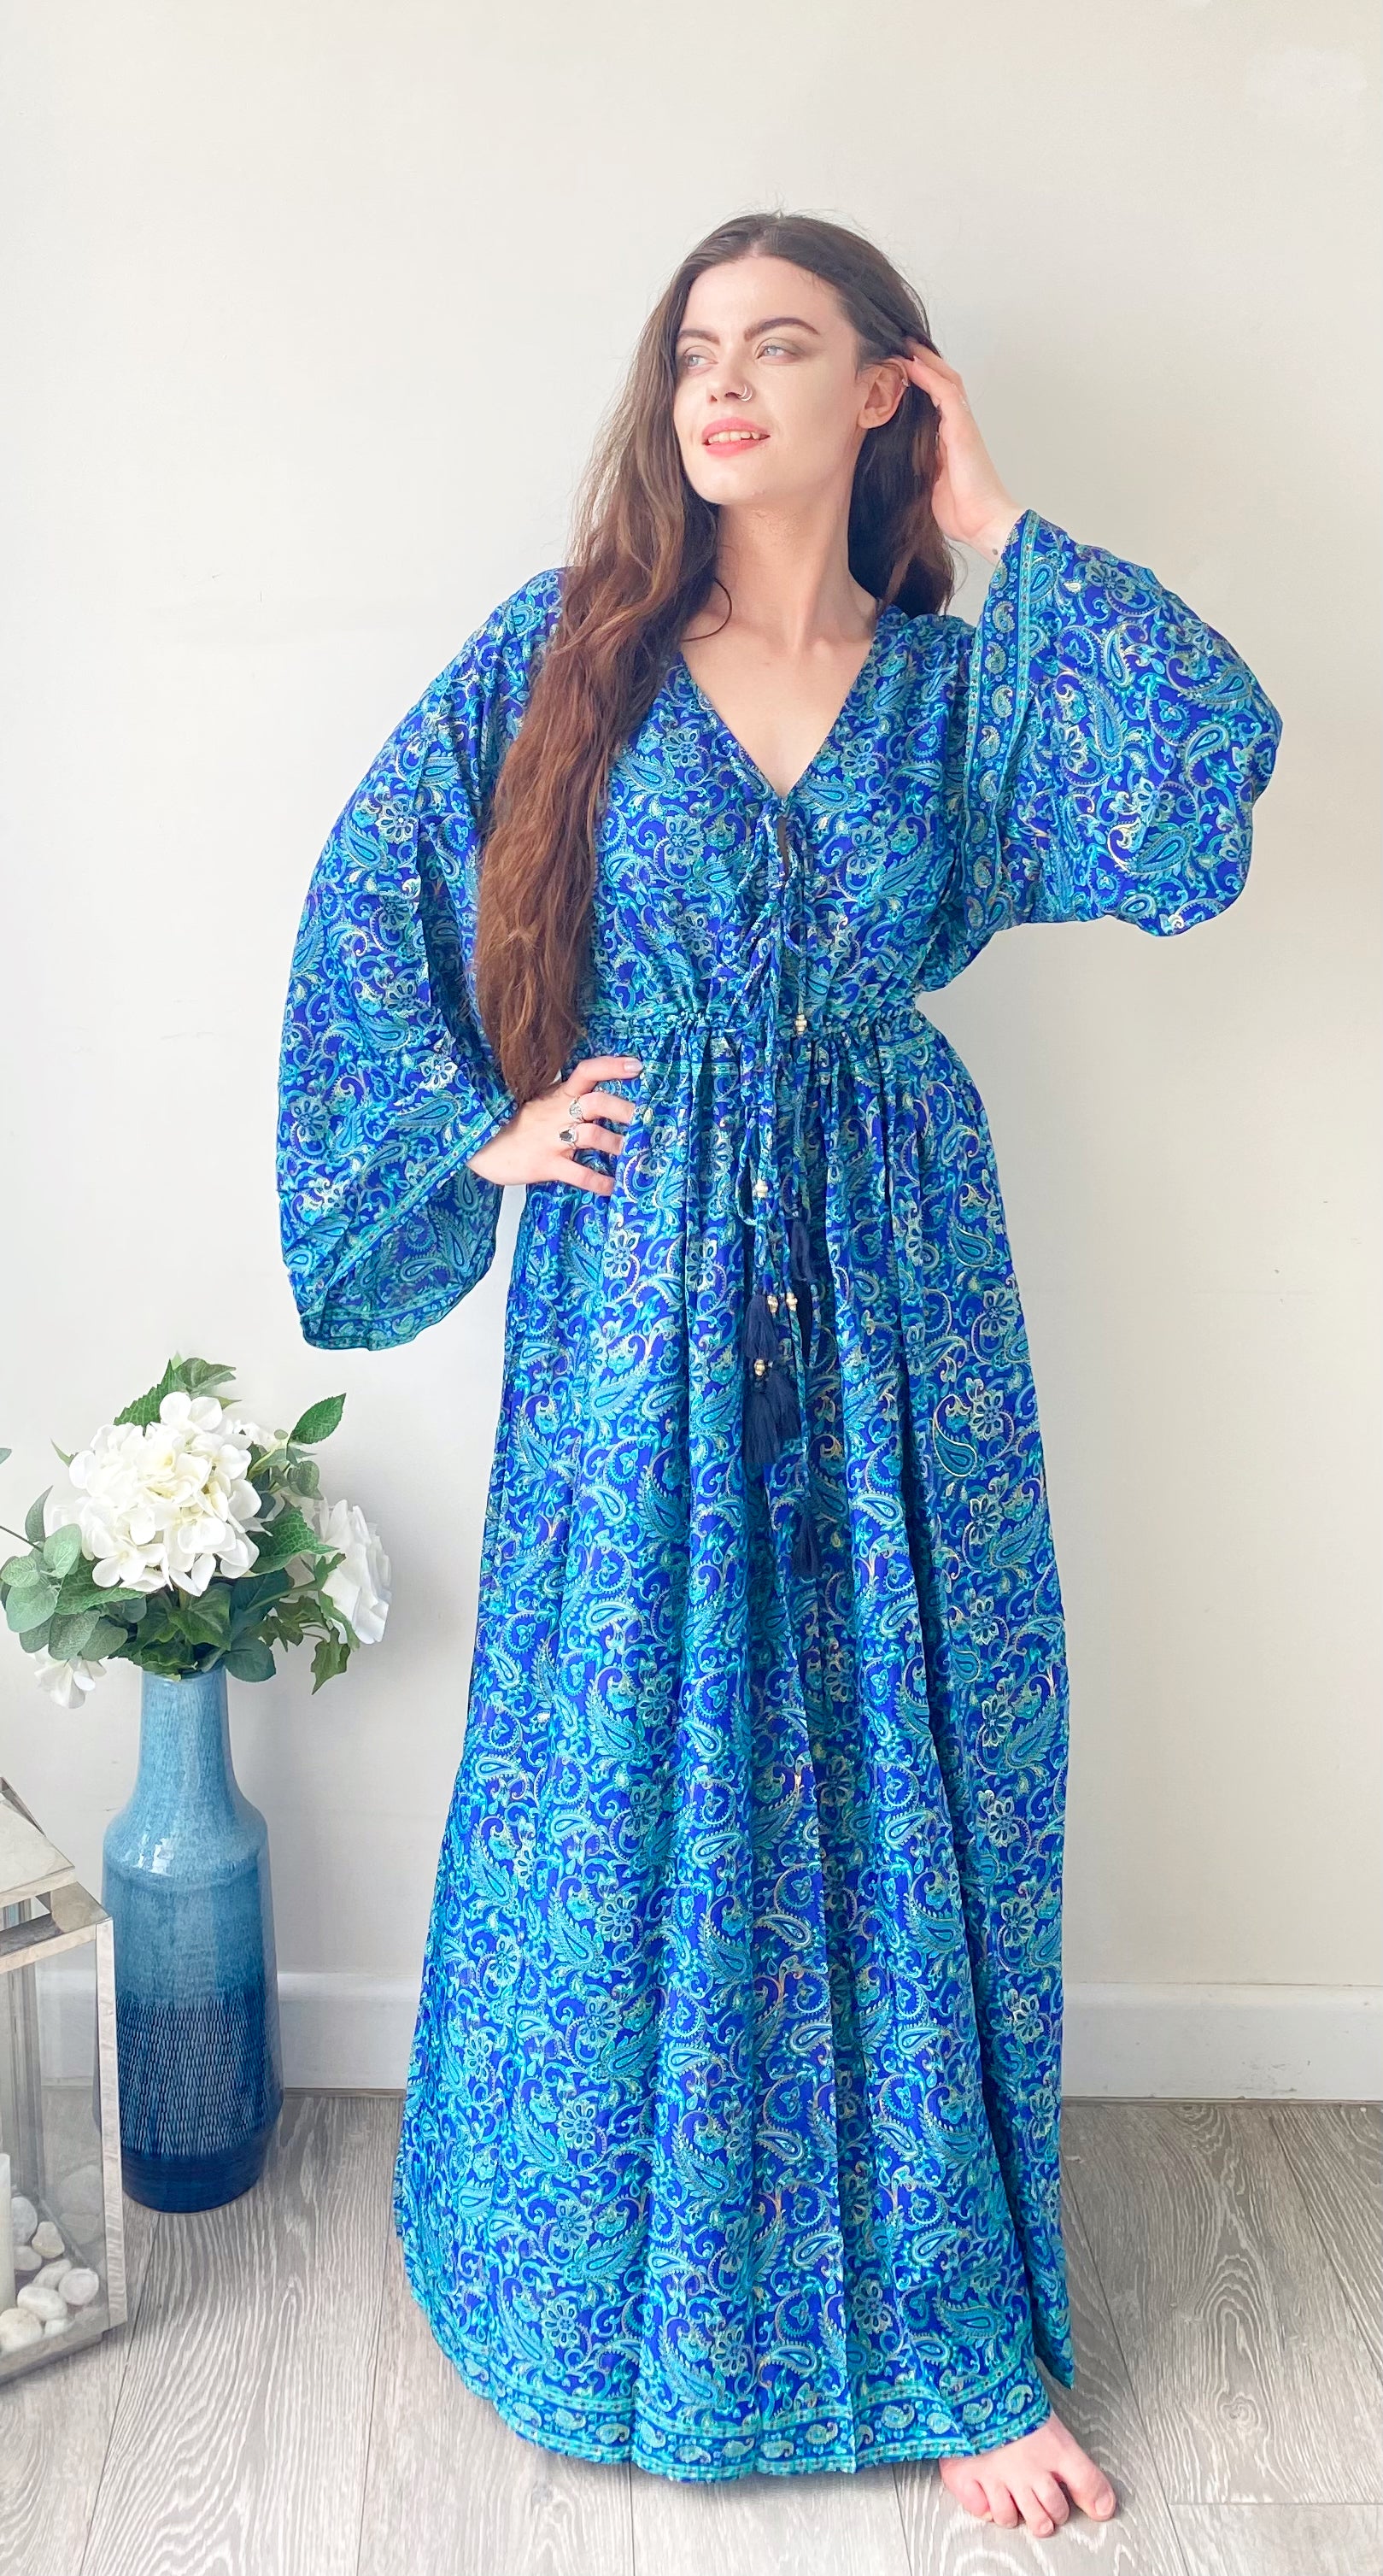 Nova royal-blue paisley-print silk maxi dress free size UK8-16DRESSES